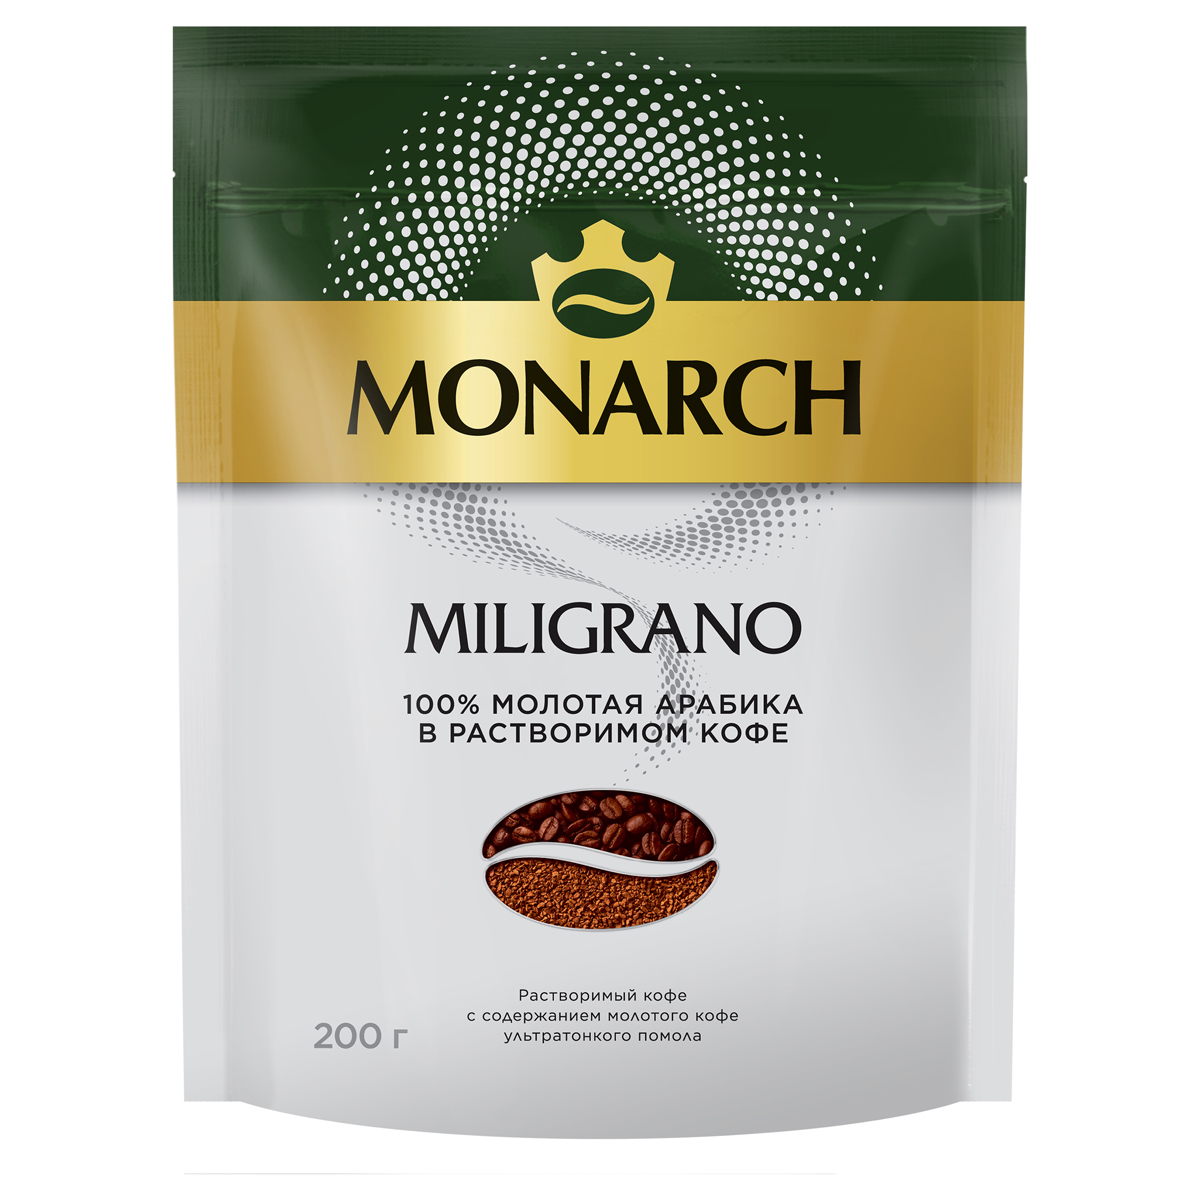 Кофе растворимый Monarch "Miligrano", сублимированный, с молотым, мягкая упаковка, 200г